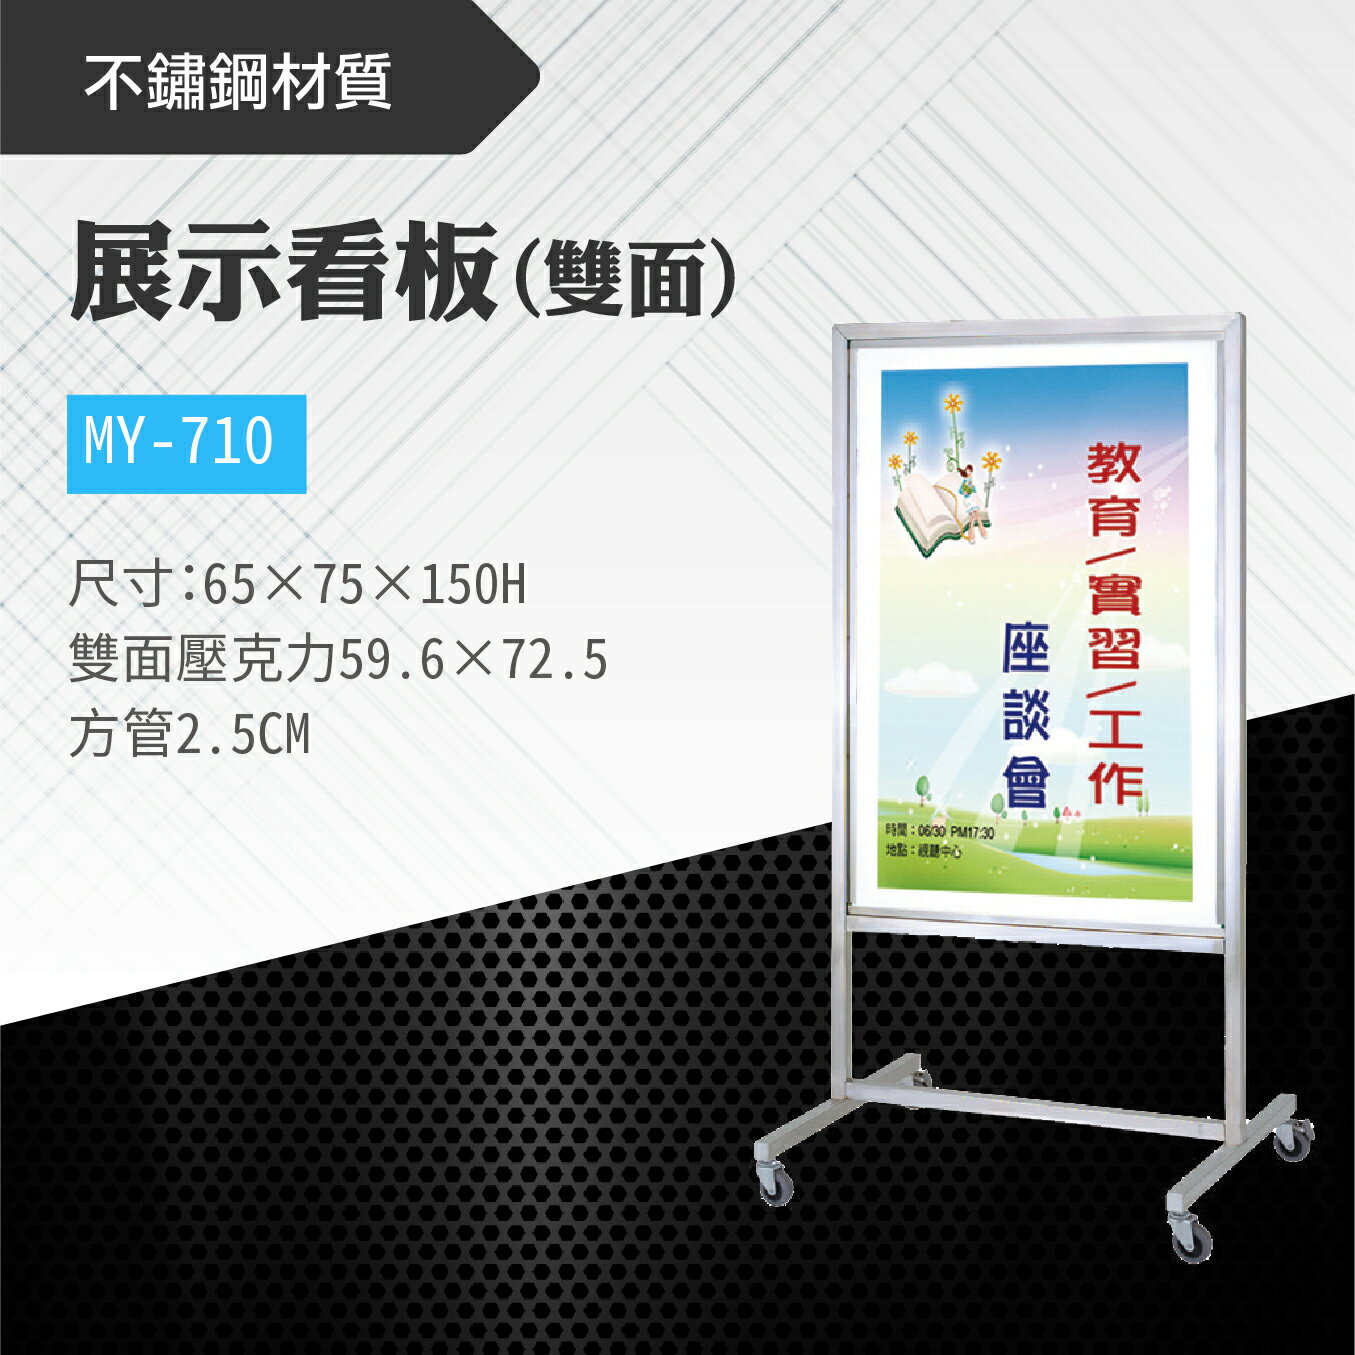 台灣製 雙面展示看板 MY-710 布告欄 展板 海報板 立式展板 展示架 指示牌 廣告板 標示板 學校 活動